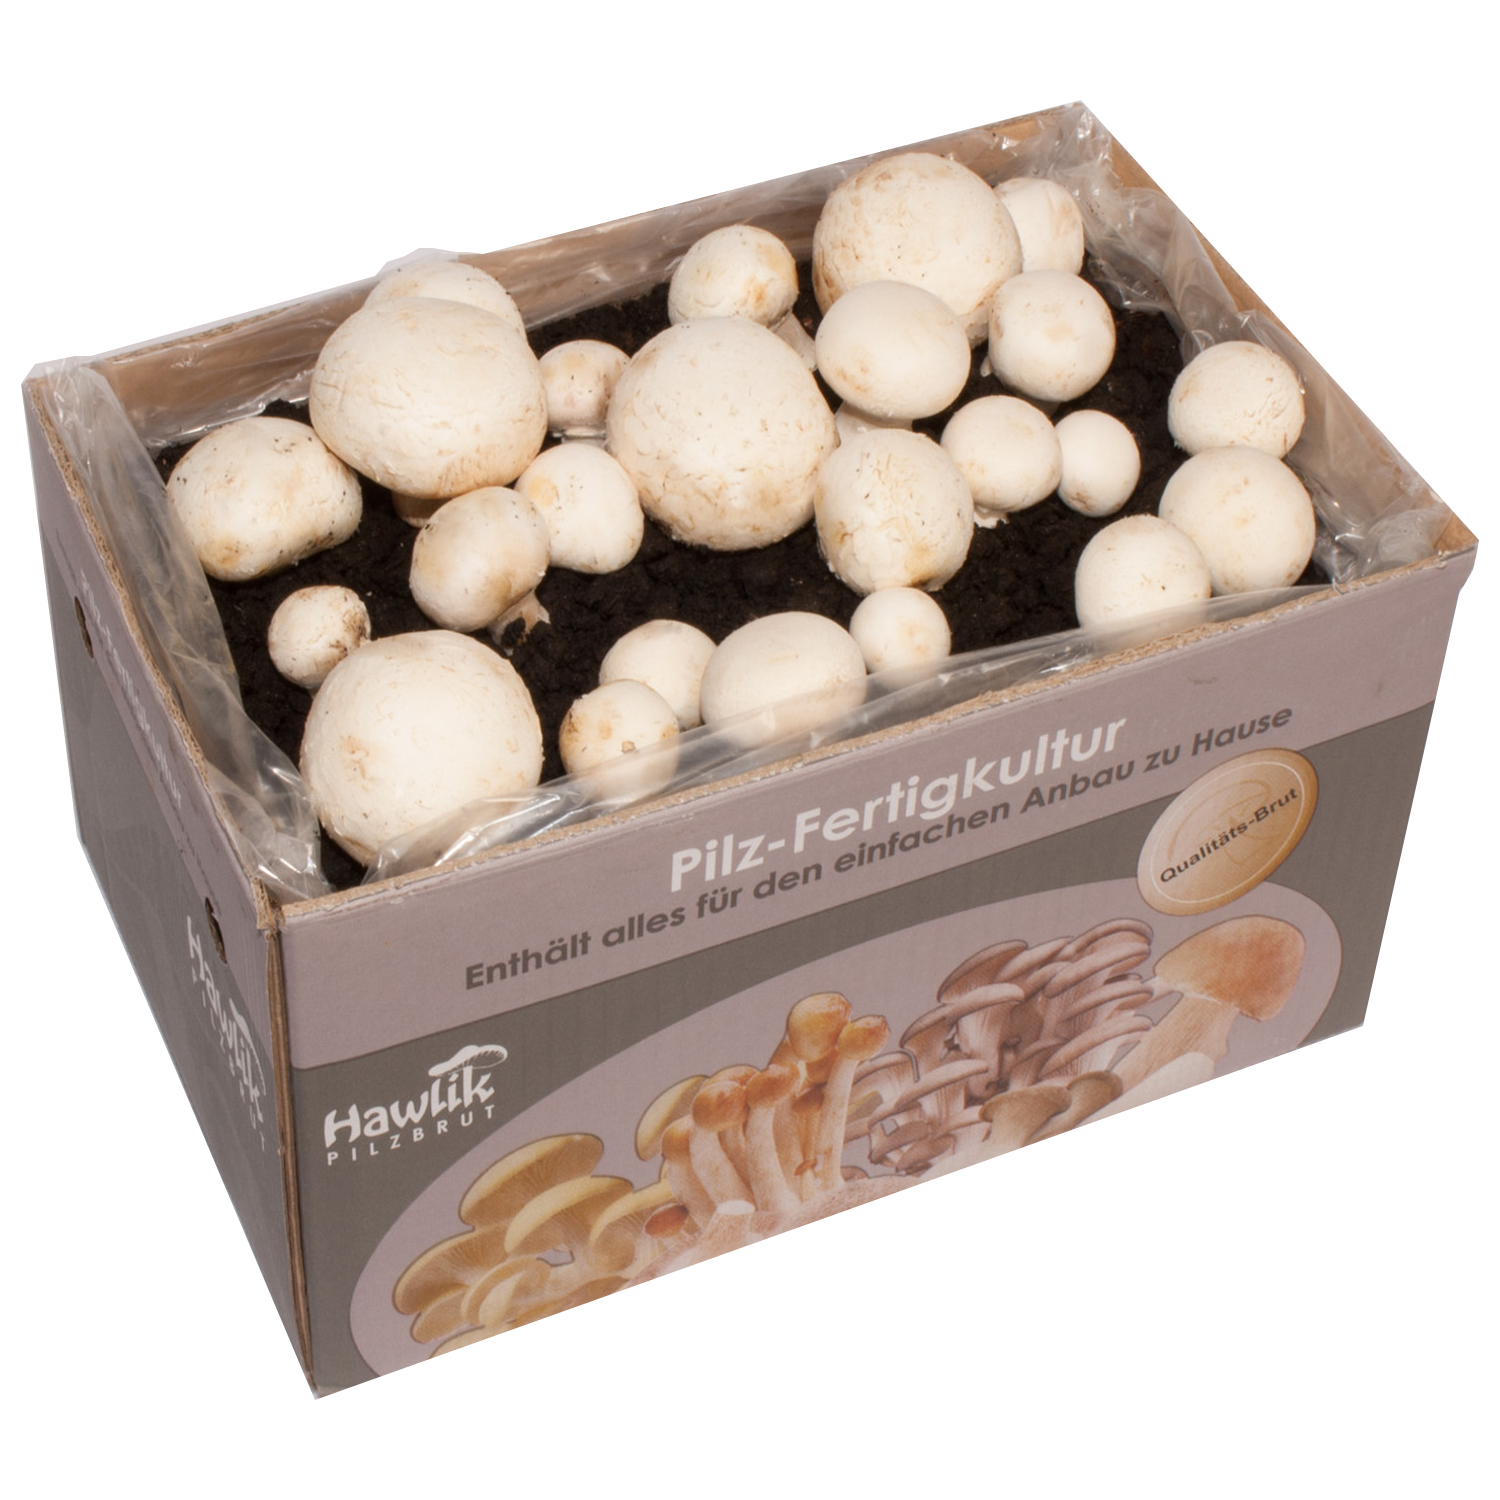 Hawlik Pilzbrut - Champignon mushroom, white